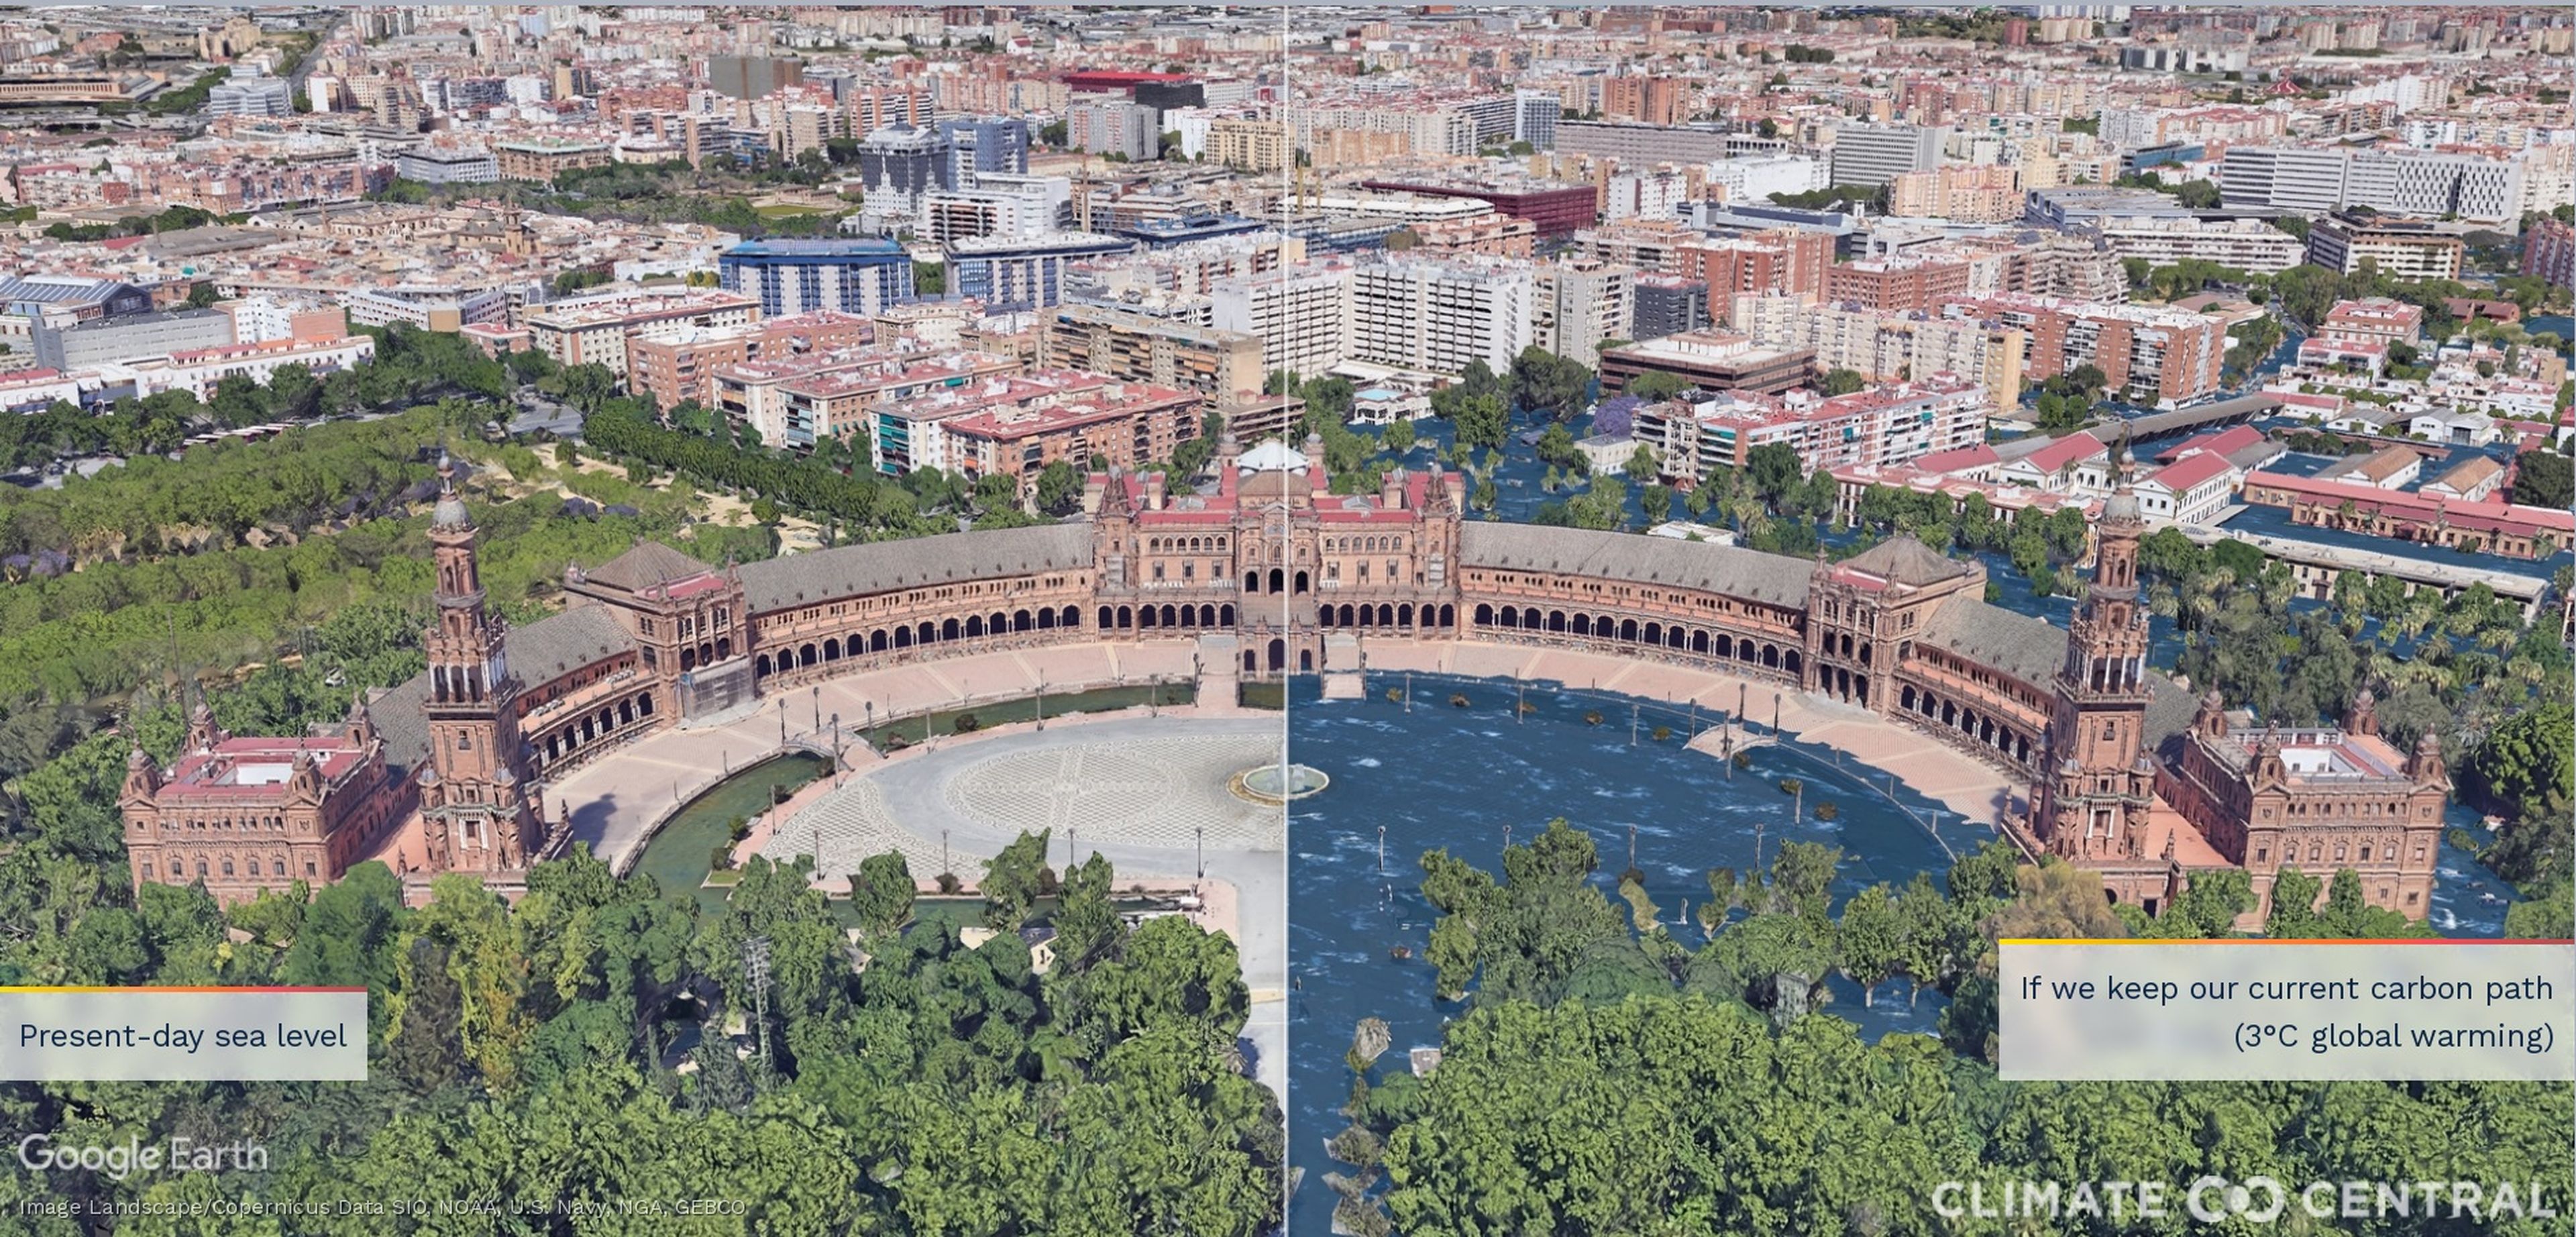 Representación de la Plaza de España de Sevilla si se mantuvieran el actual nivel de emisiones.